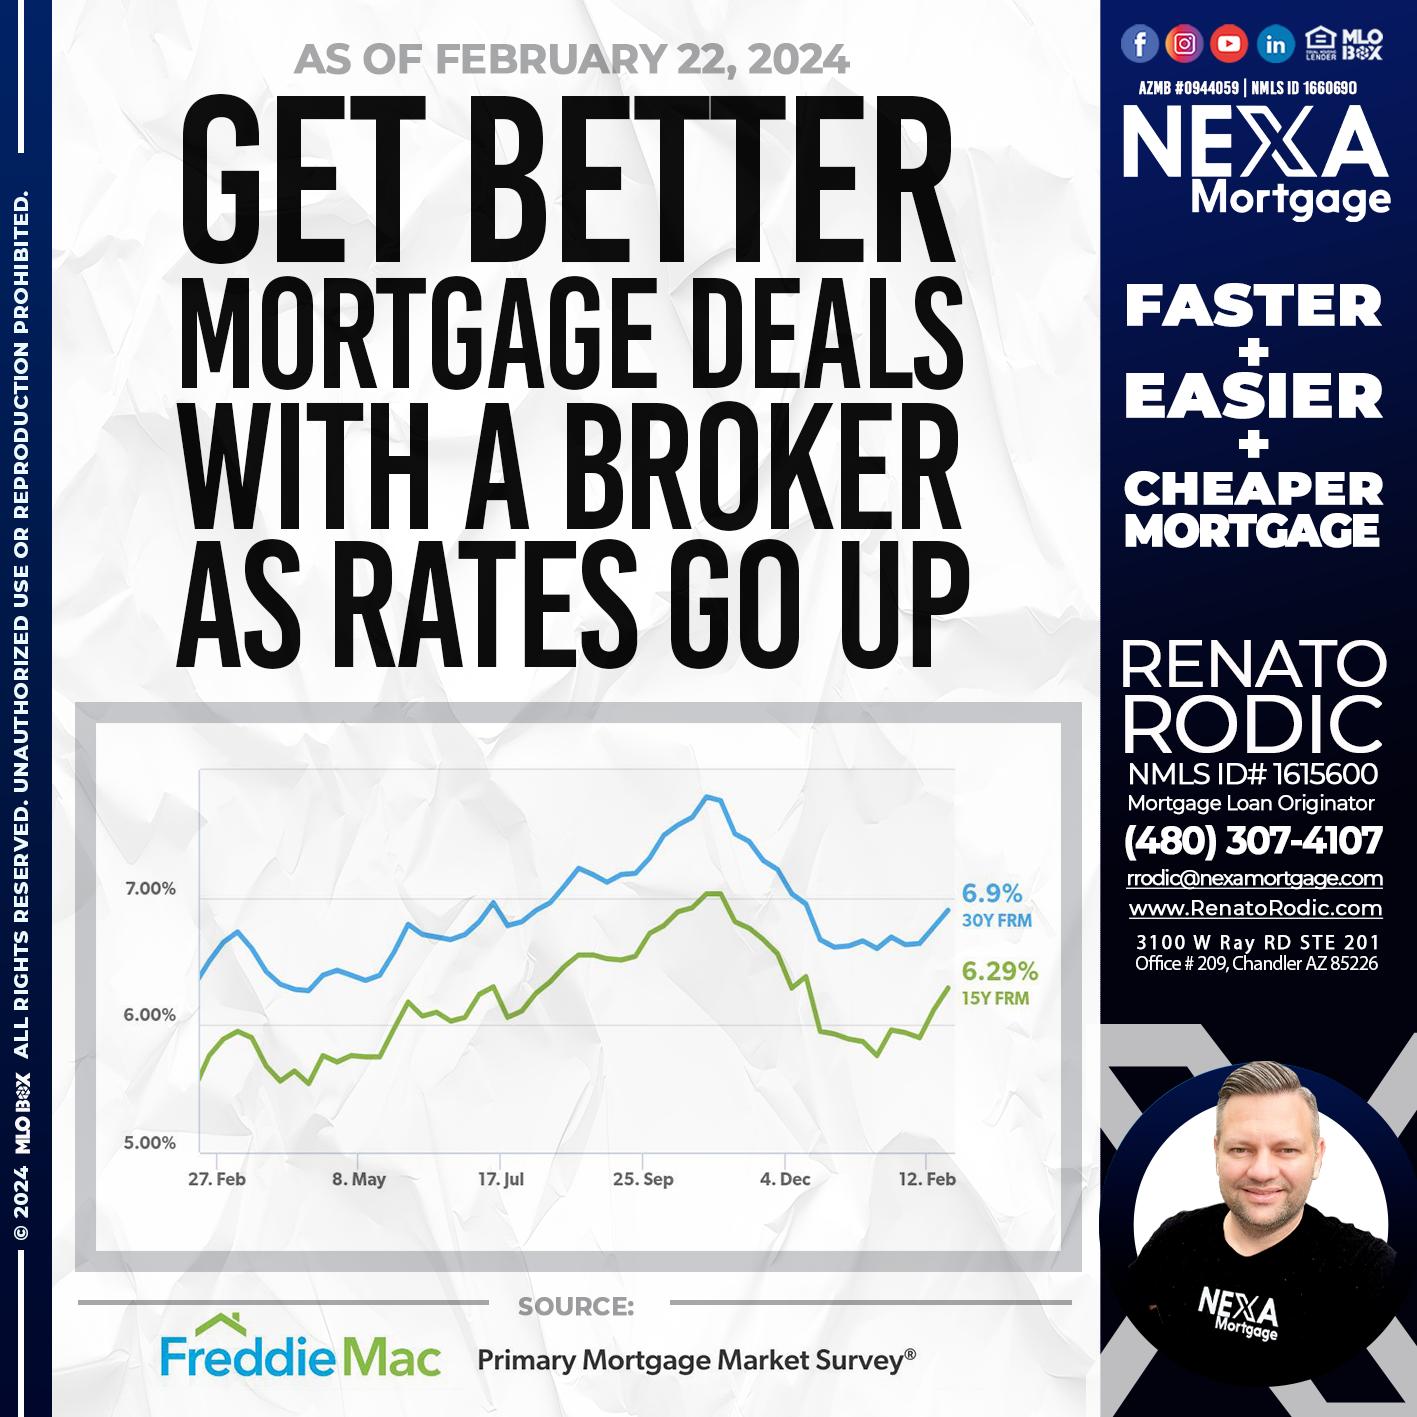 GET BETTER - Renato Rodic -Mortgage Loan Originator